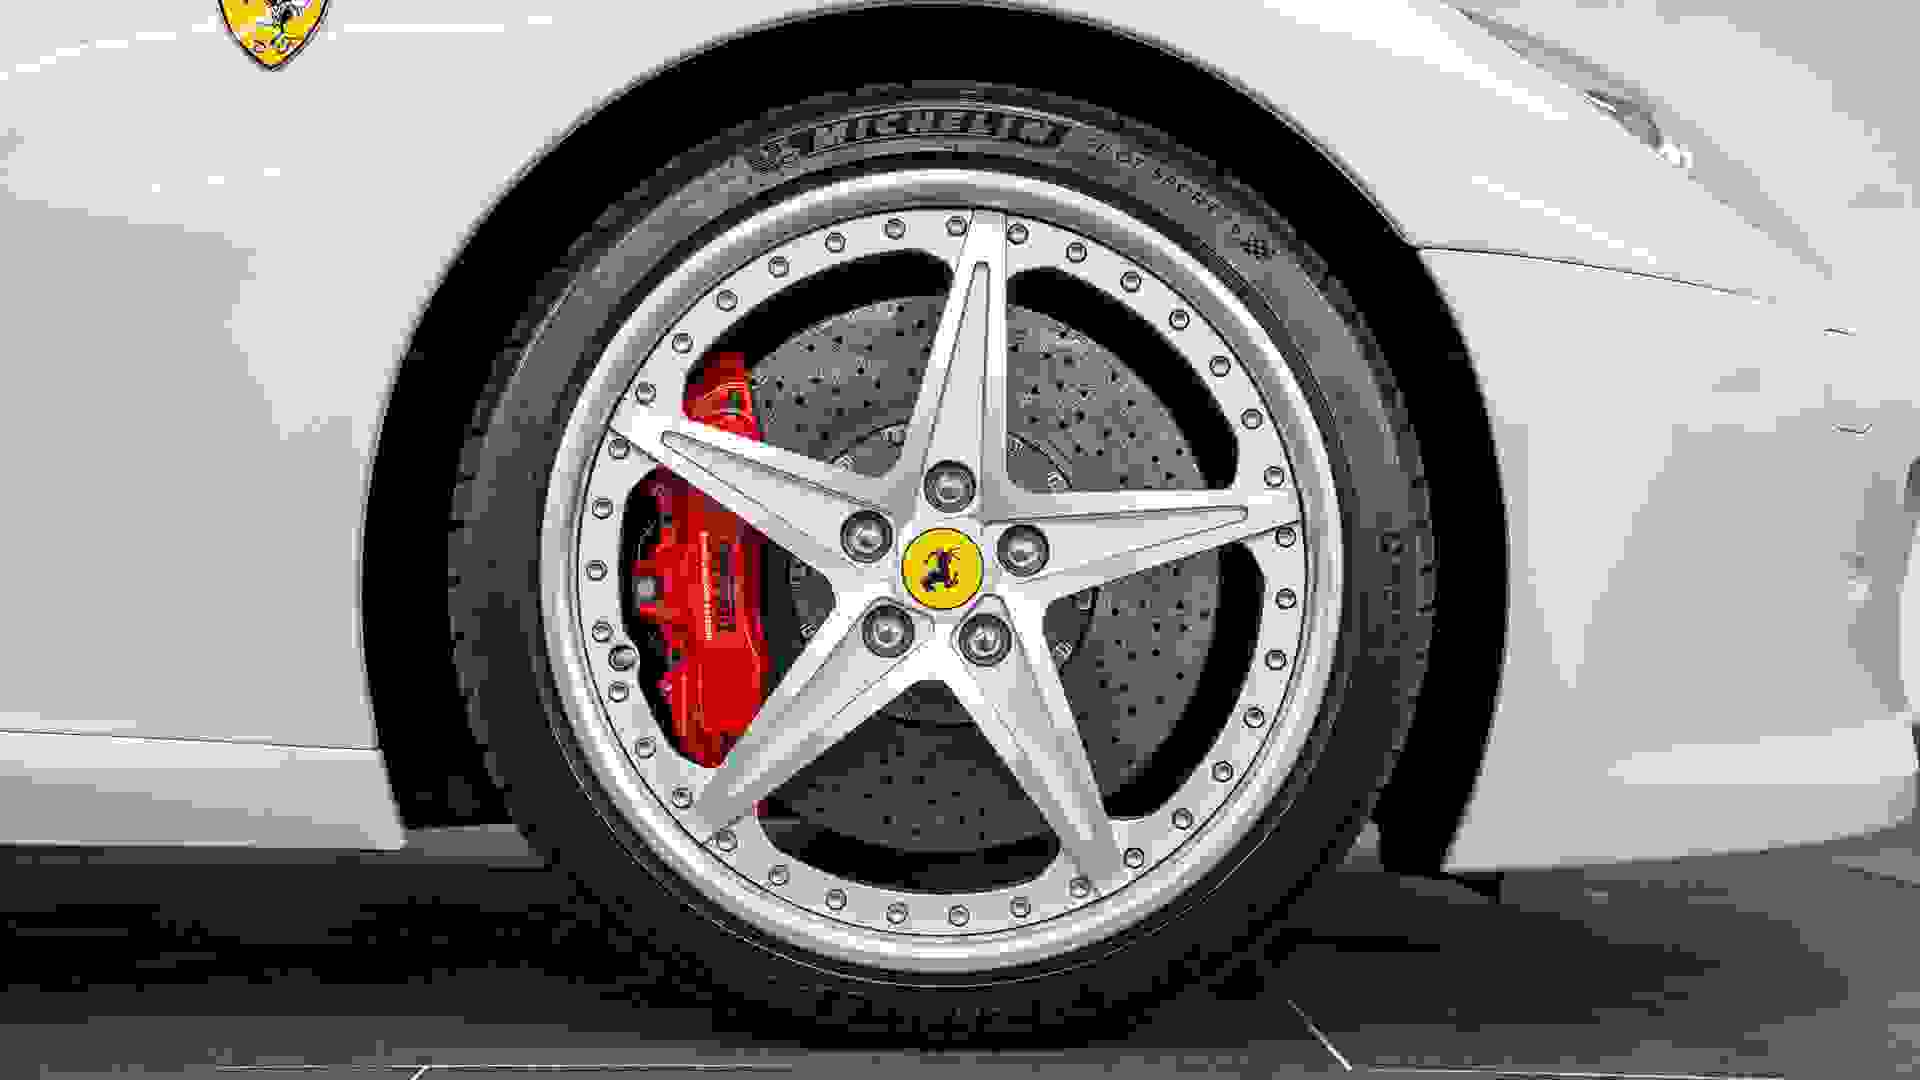 Ferrari 599 GTB Fiorano Photo 2ef6c967-d2fe-41d0-9dbf-2c2126188836.jpg